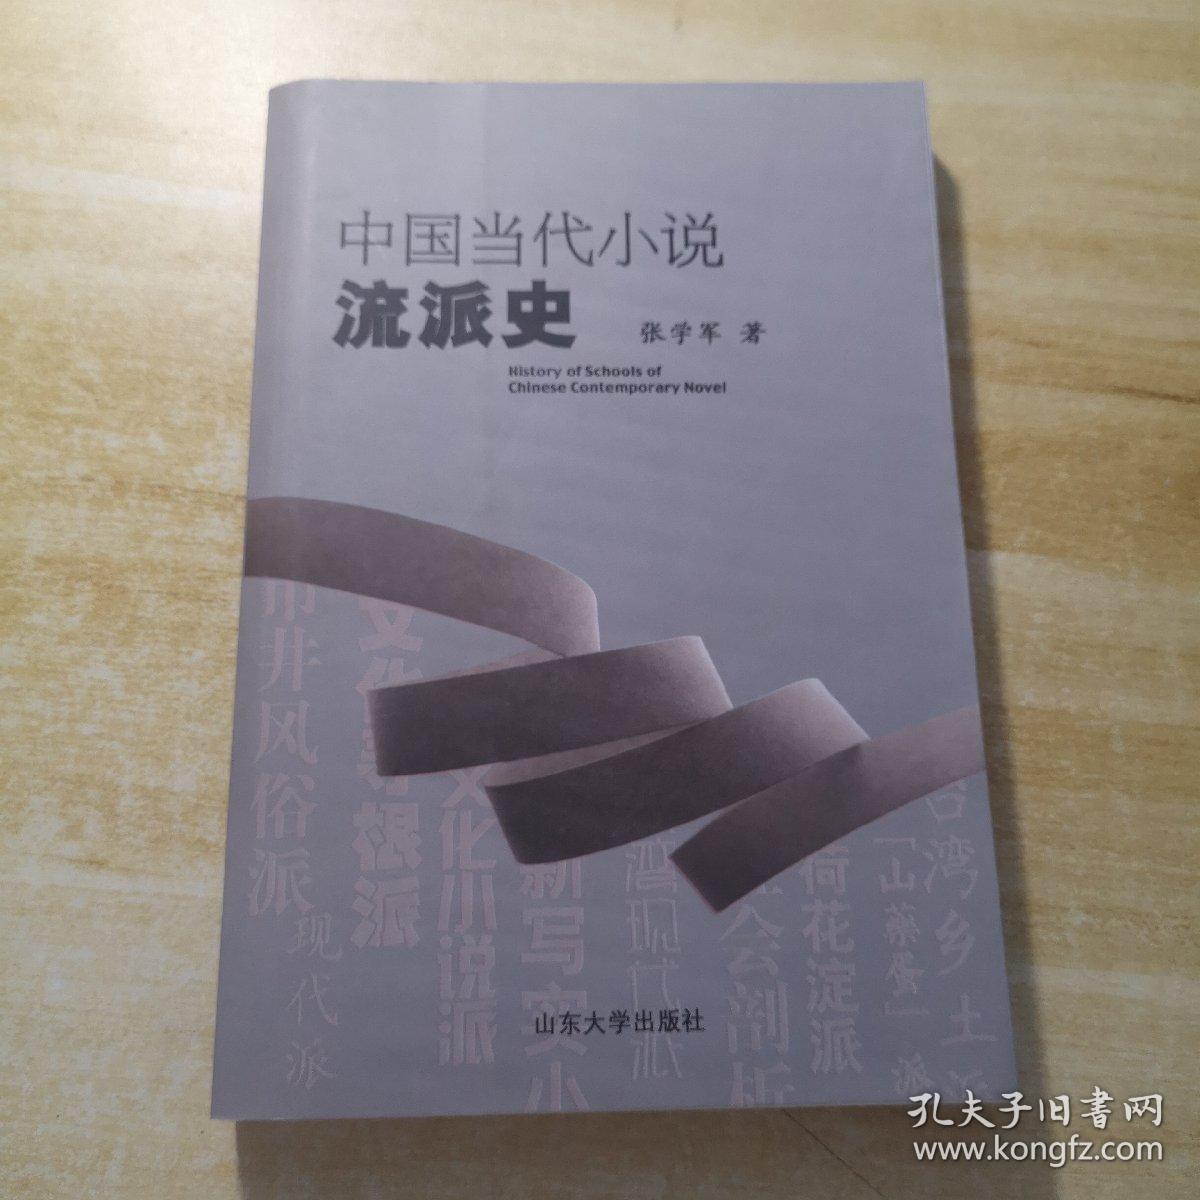 中国当代小说流派史